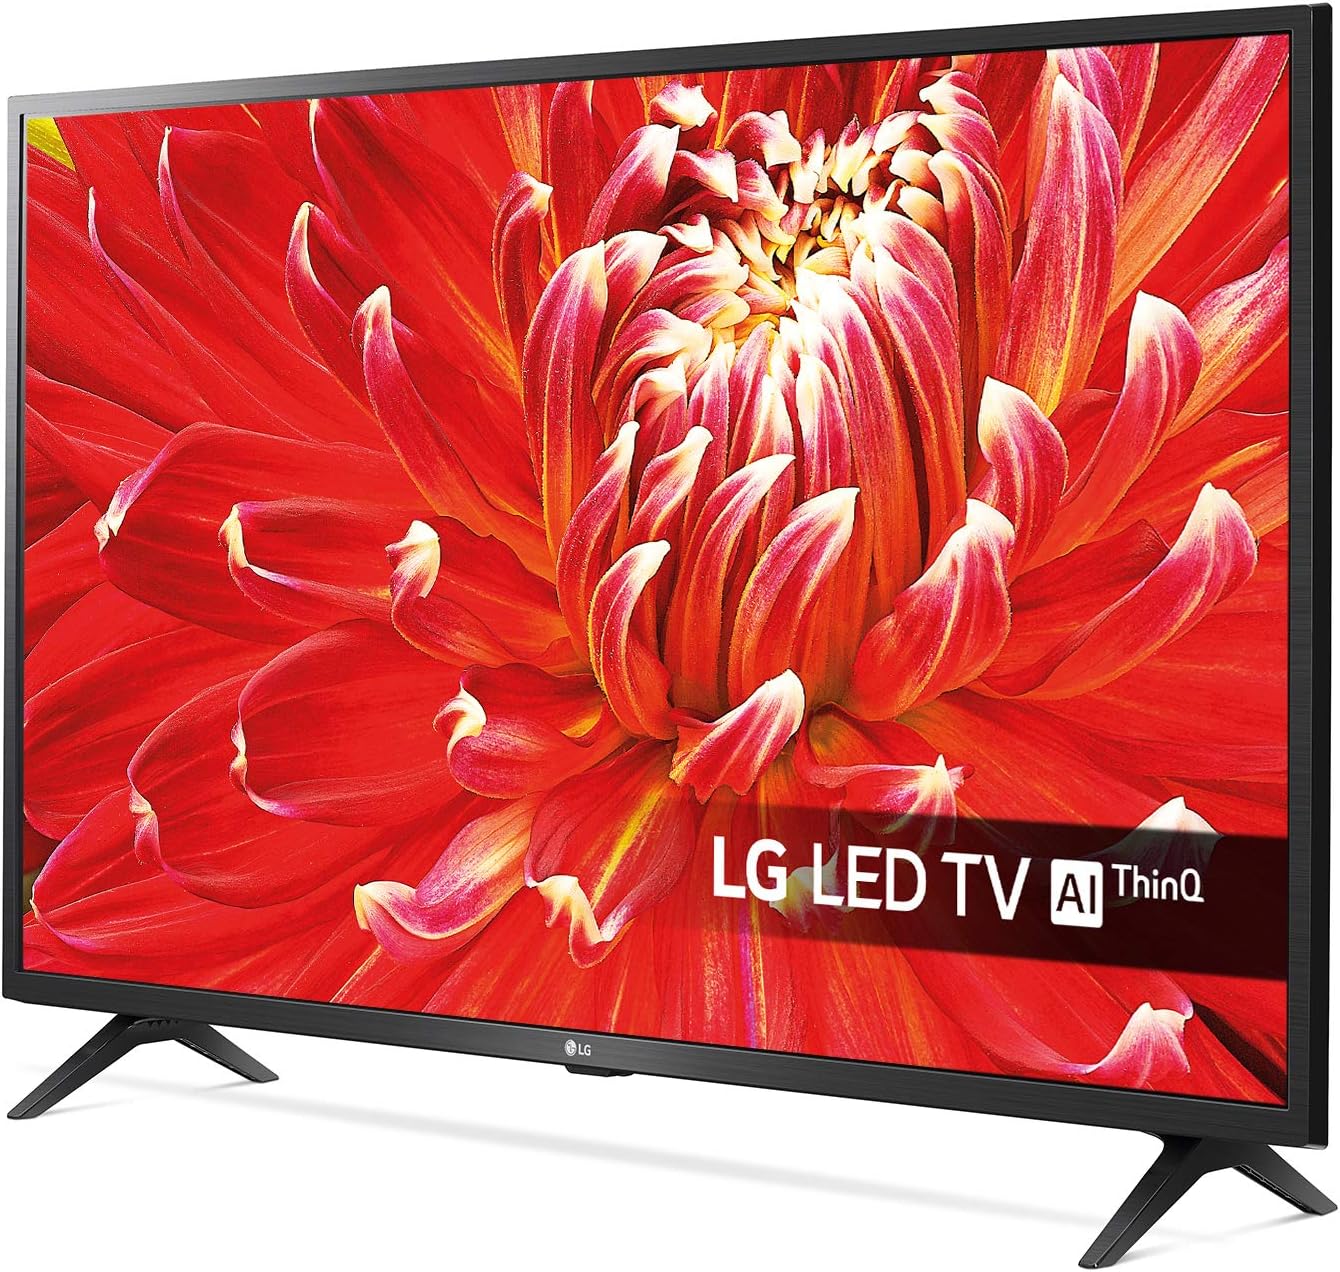 LG 32LM6300PLA 32" Smart Full HD HDR LED TV